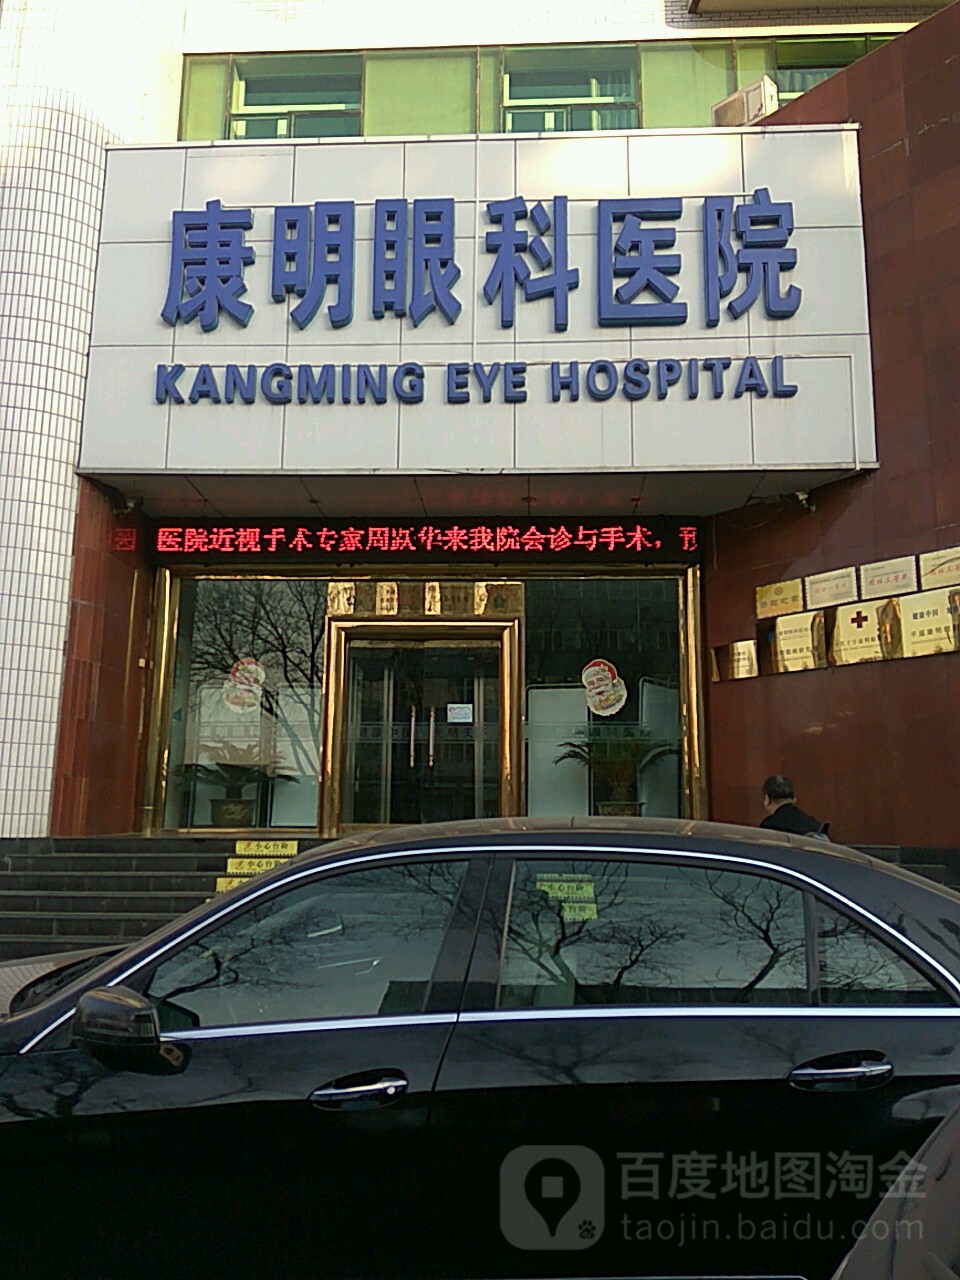 康明眼科医院